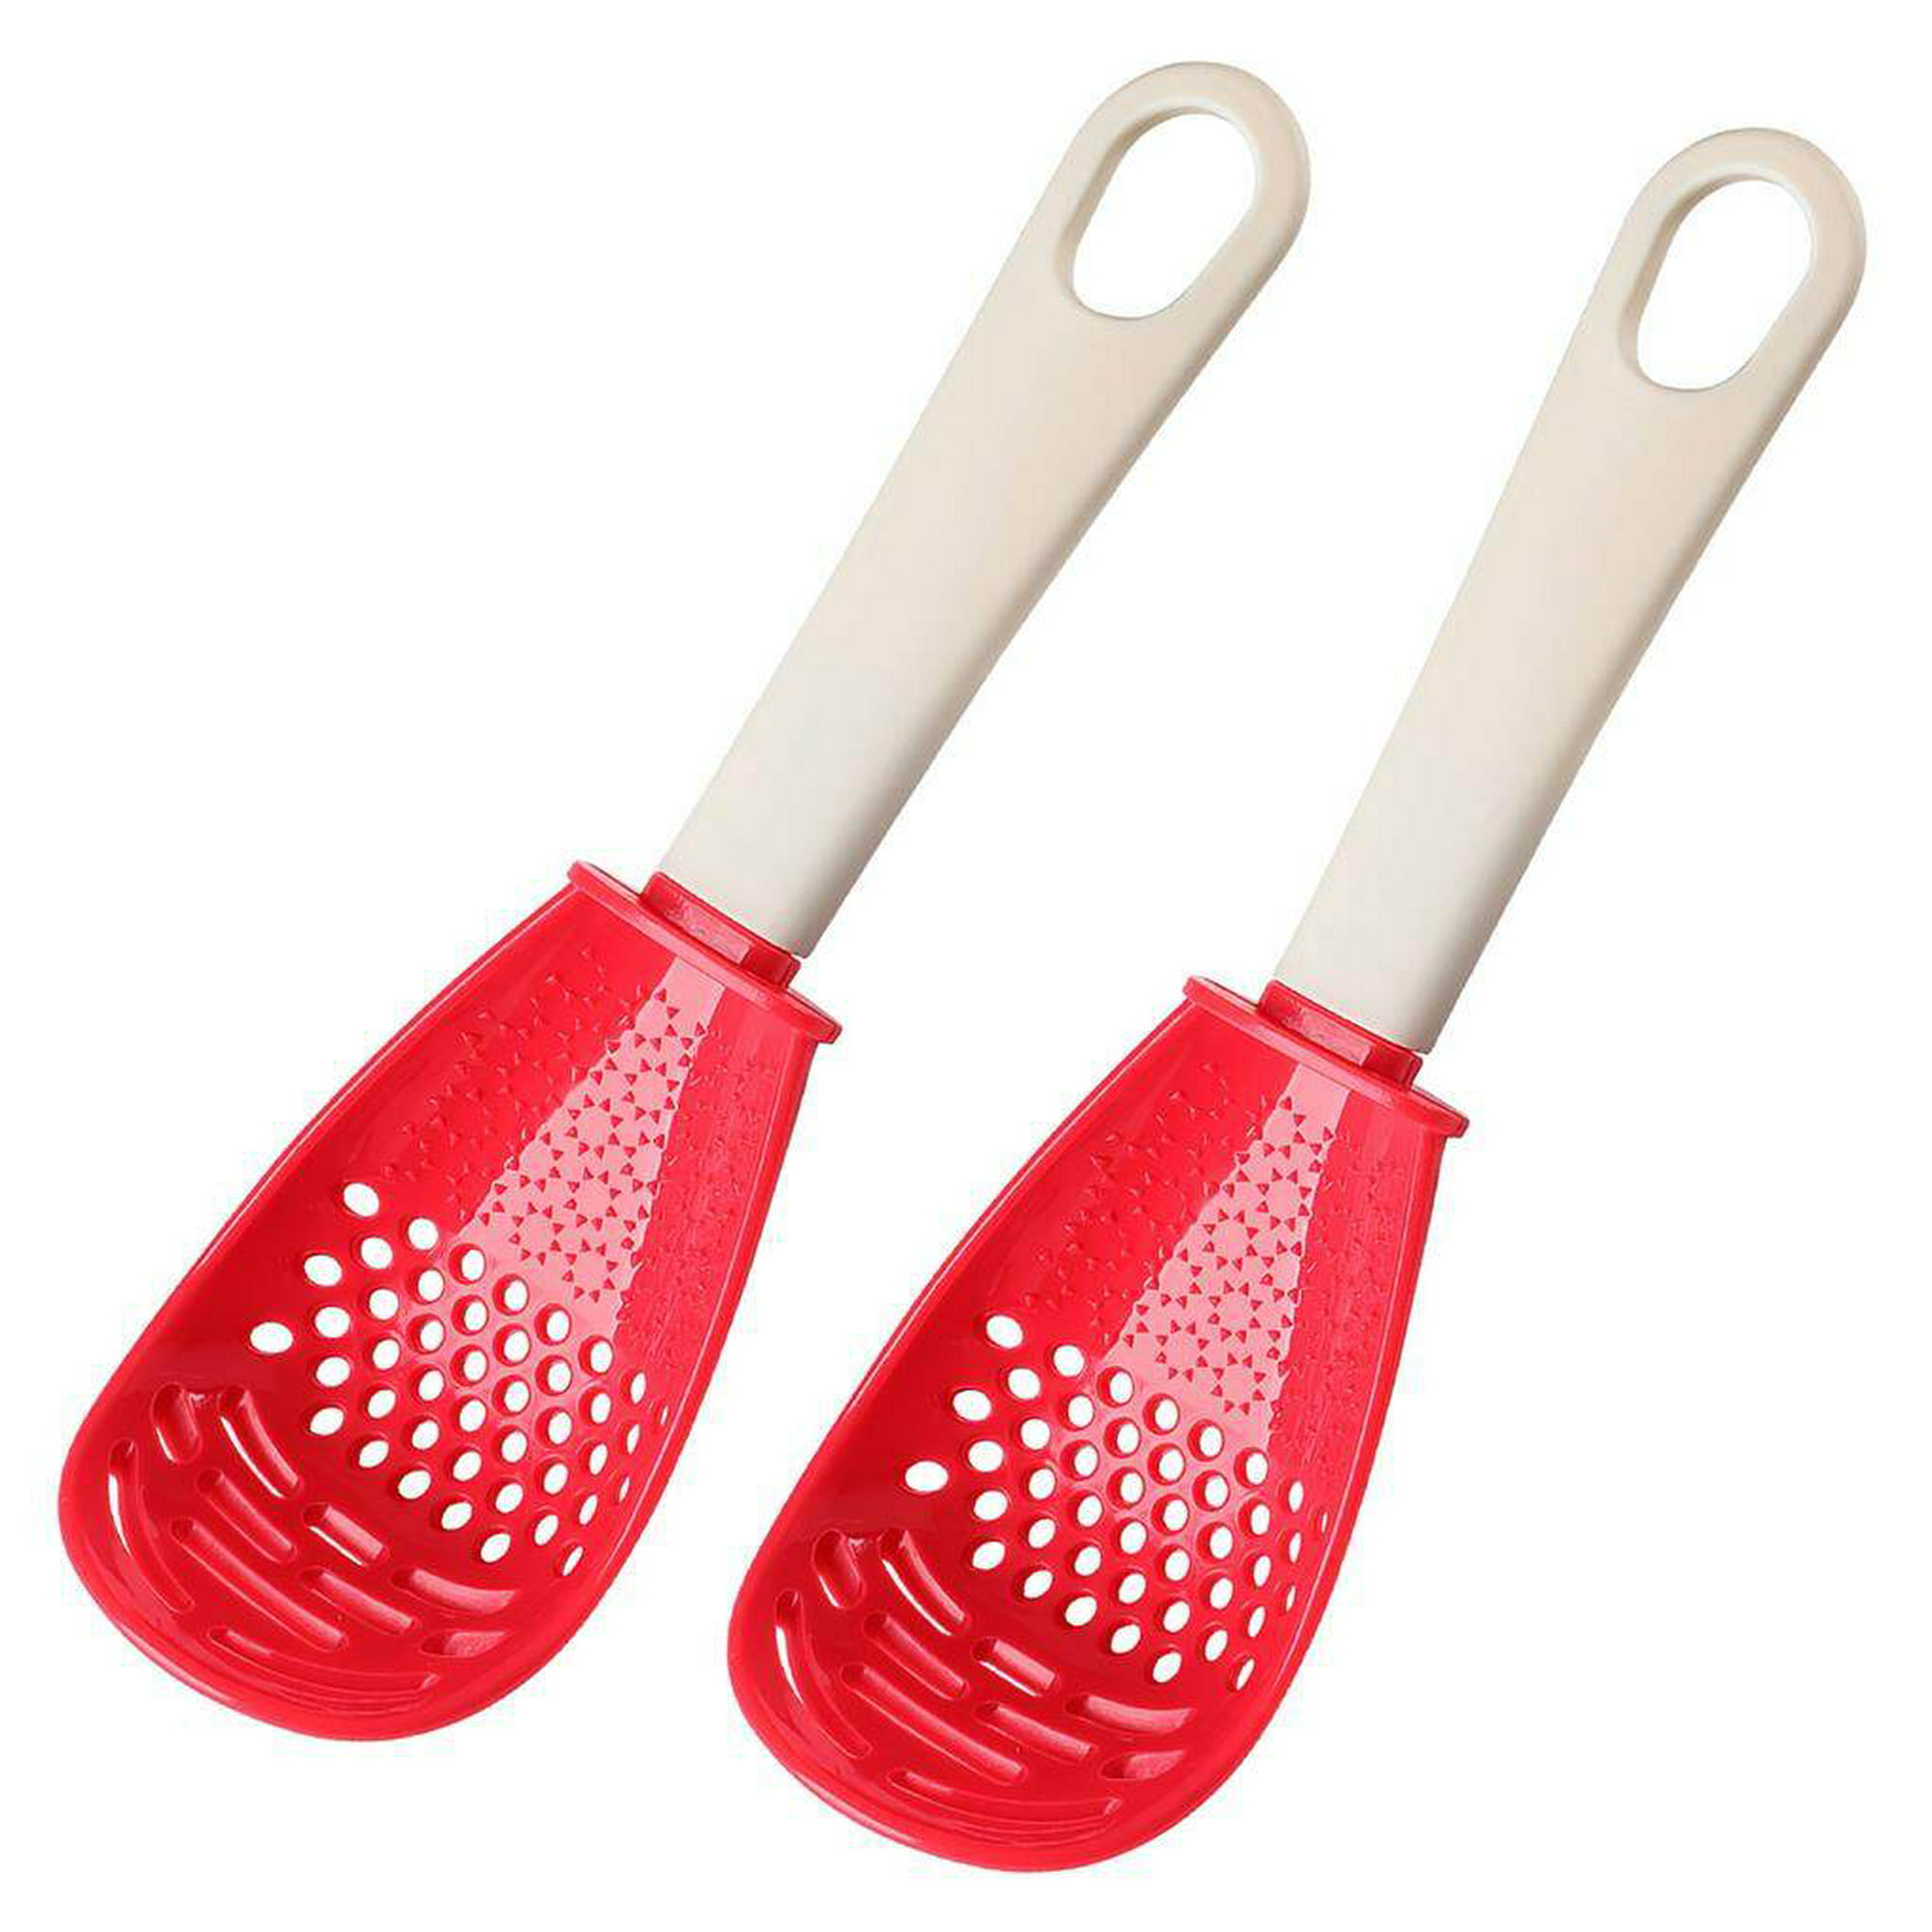 Milmanias - De re paquete estas apoya cucharas que son súper útiles en la  cocina Imaginate cocinando una salsa deli, te tocan timbre y tenés que  abrir la puerta dónde dejás la